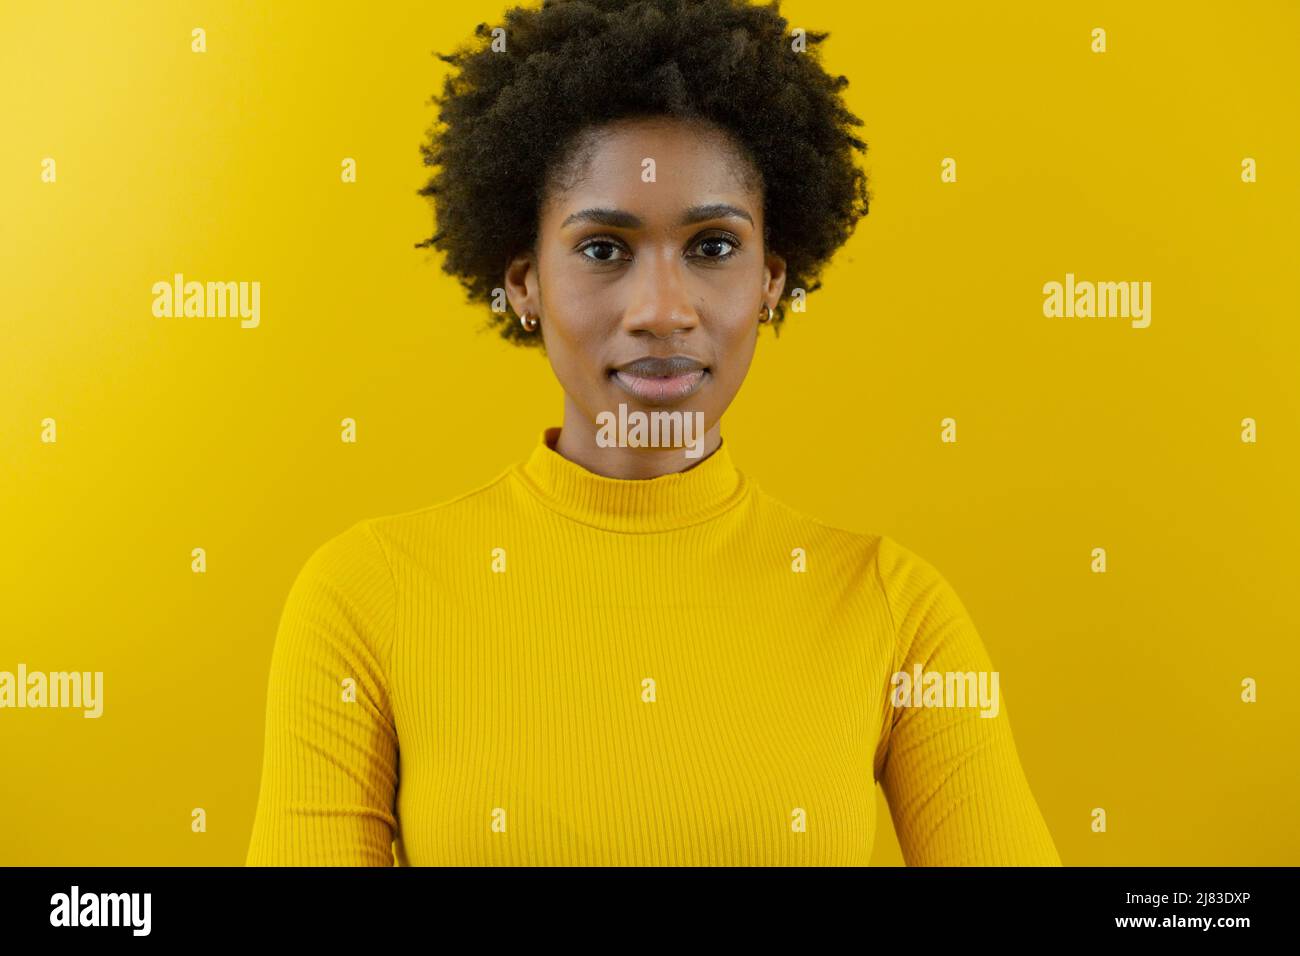 Porträt einer selbstbewussten jungen afroamerikanischen Berater-Frau mit Afro-Frisur an der gelben Wand Stockfoto